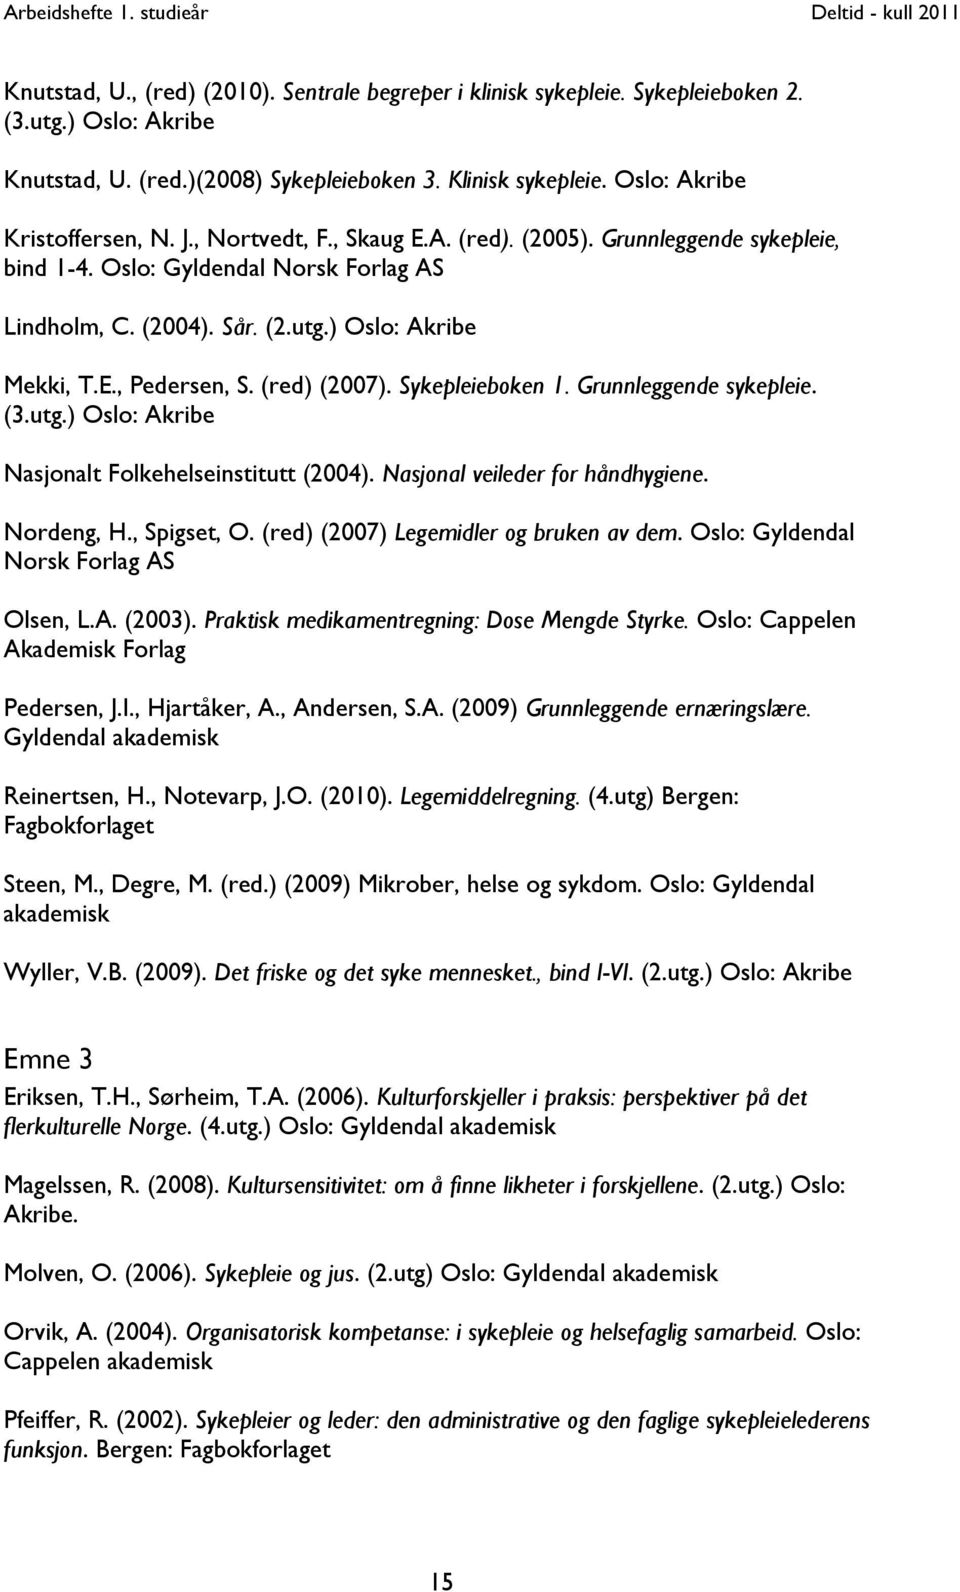 Sykepleieboken 1. Grunnleggende sykepleie. (3.utg.) Oslo: Akribe Nasjonalt Folkehelseinstitutt (2004). Nasjonal veileder for håndhygiene. Nordeng, H., Spigset, O.